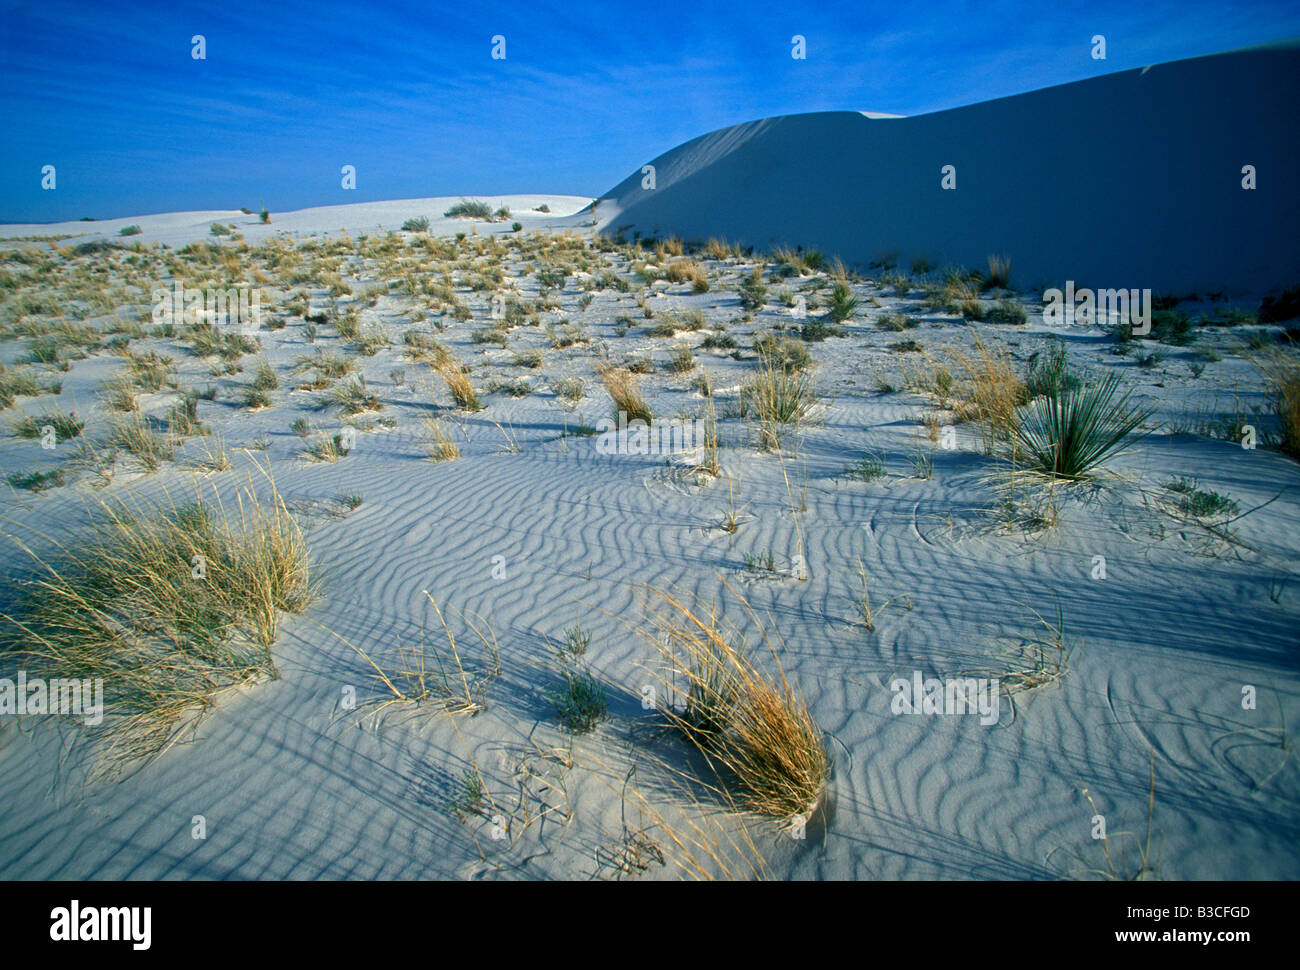 White Sands National Monument, le bassin de Tularosa, terres publiques, Alamogordo, New Mexico, United States, Amérique du Nord Banque D'Images